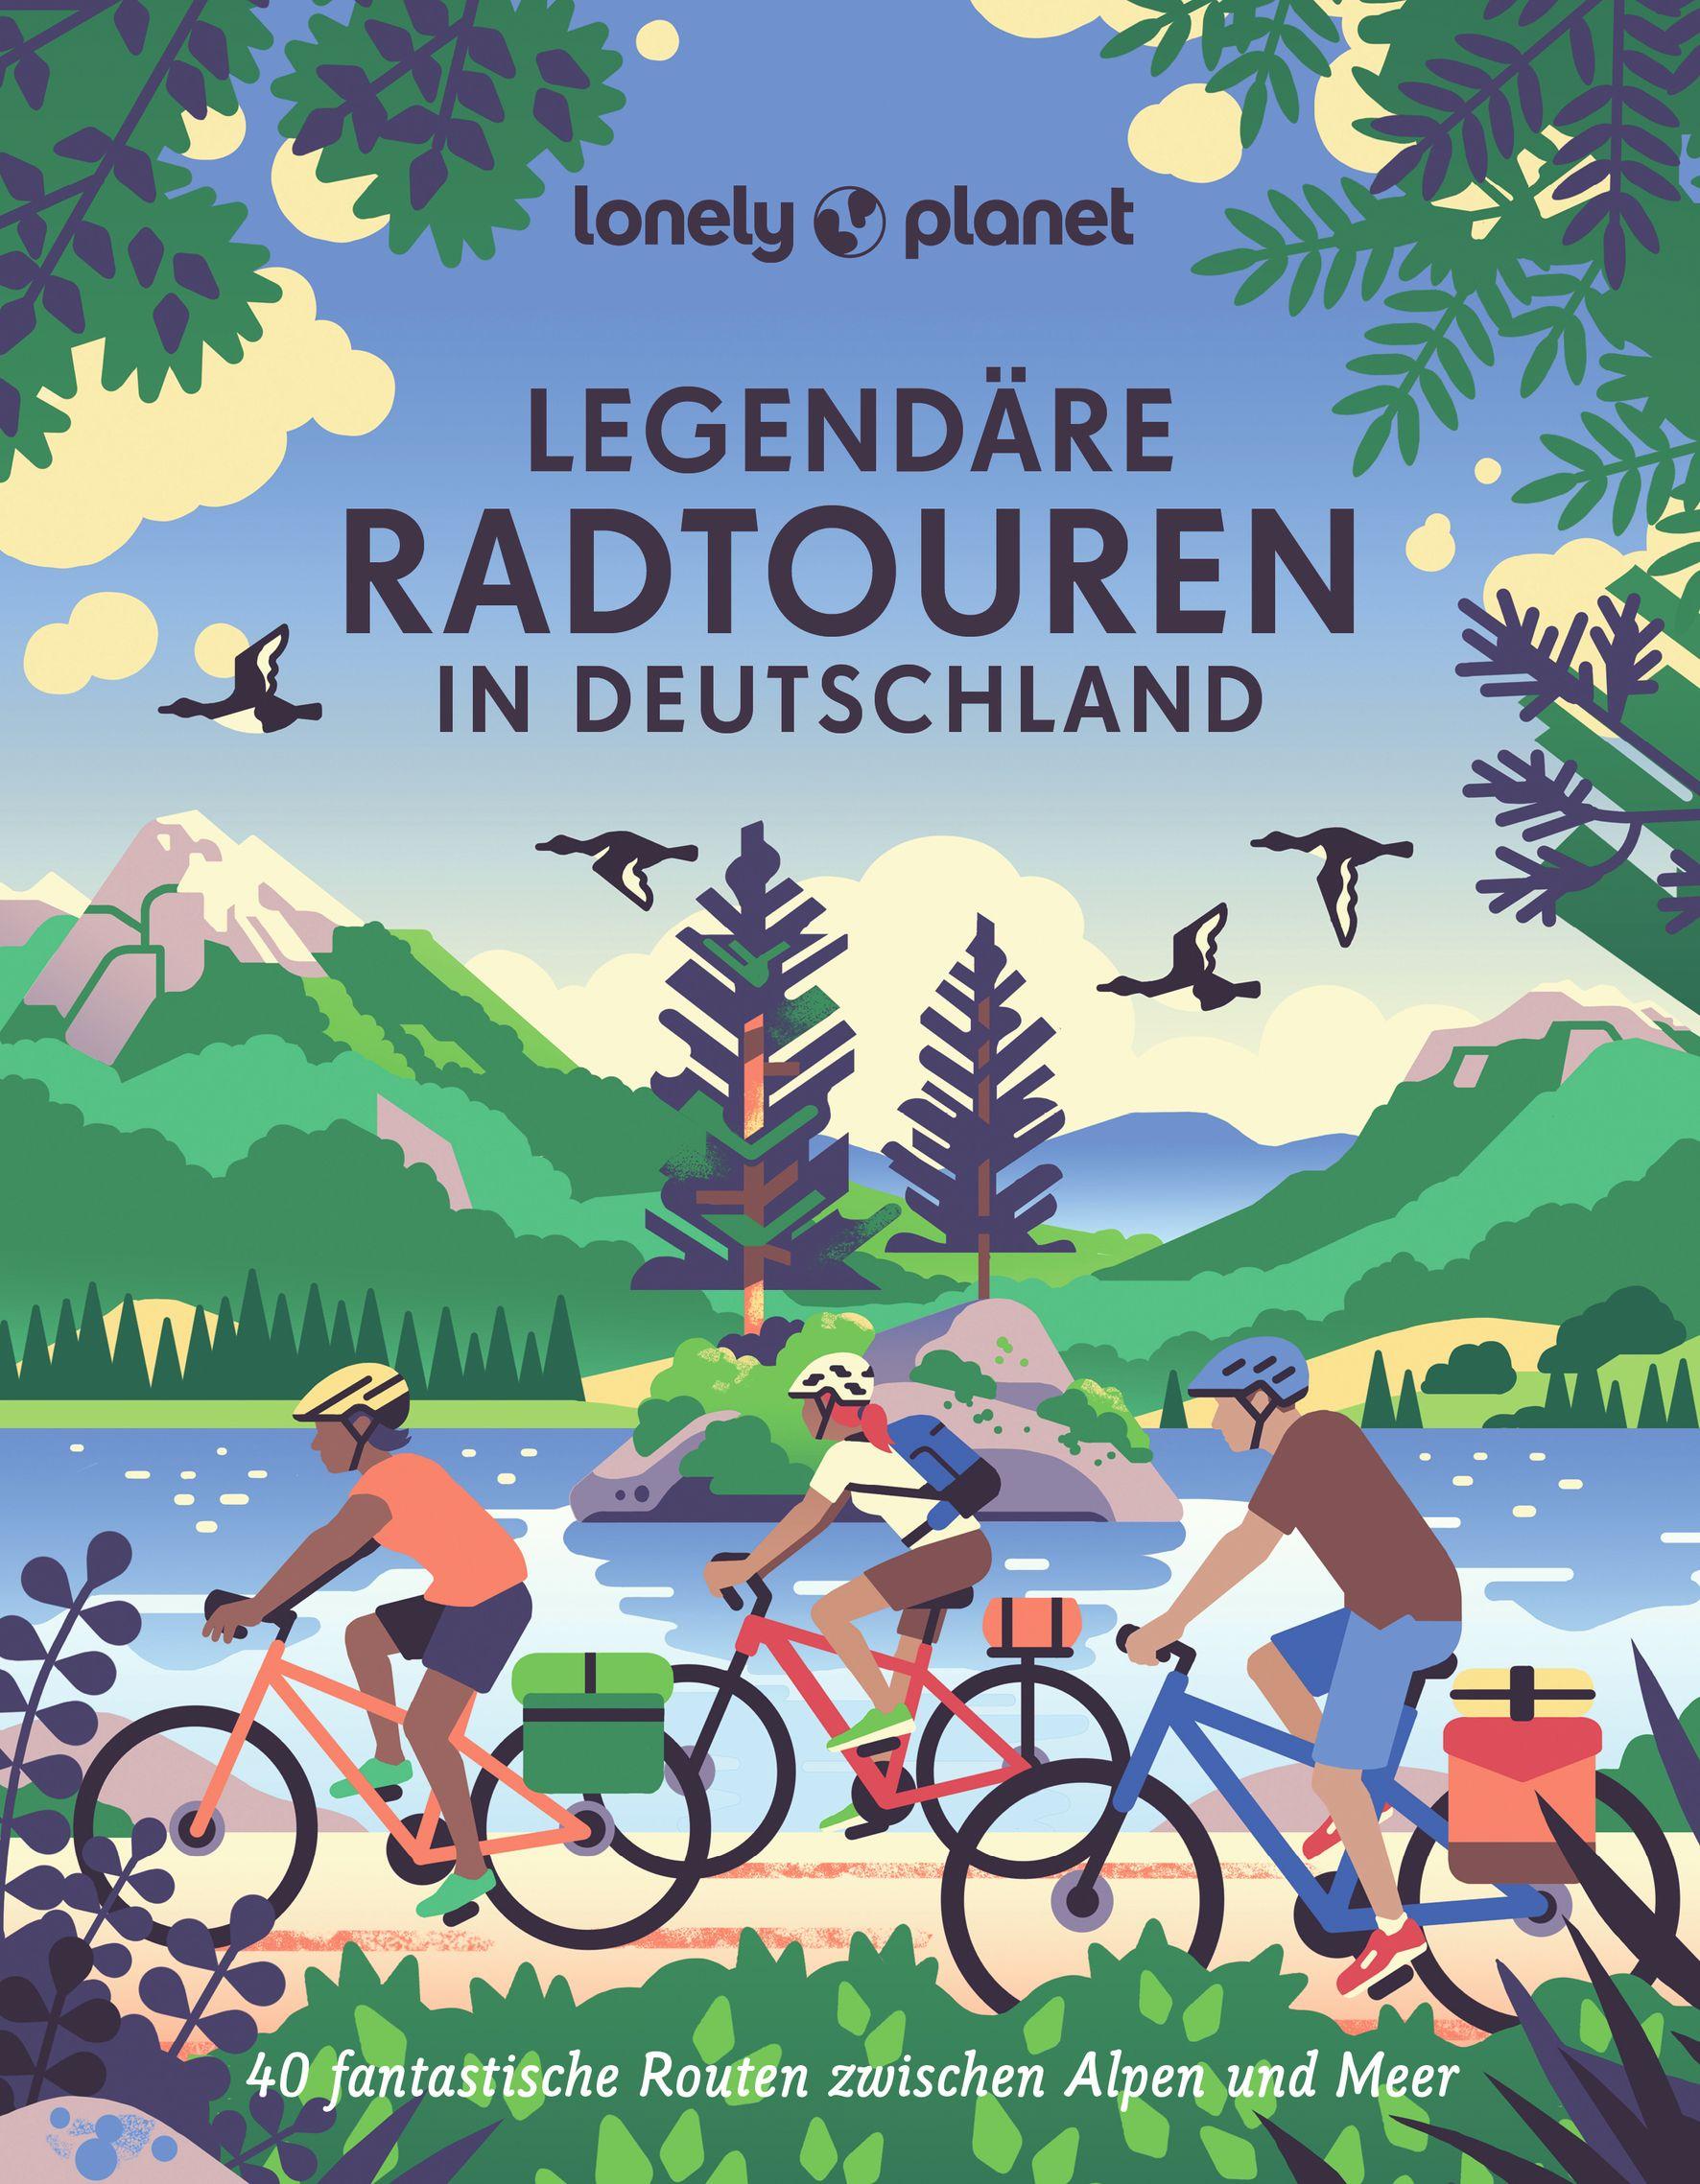 LONELY PLANET Bildband Legendäre Radtouren in Deutschland 40 fantastische Routen zwischen Alpen und Meer